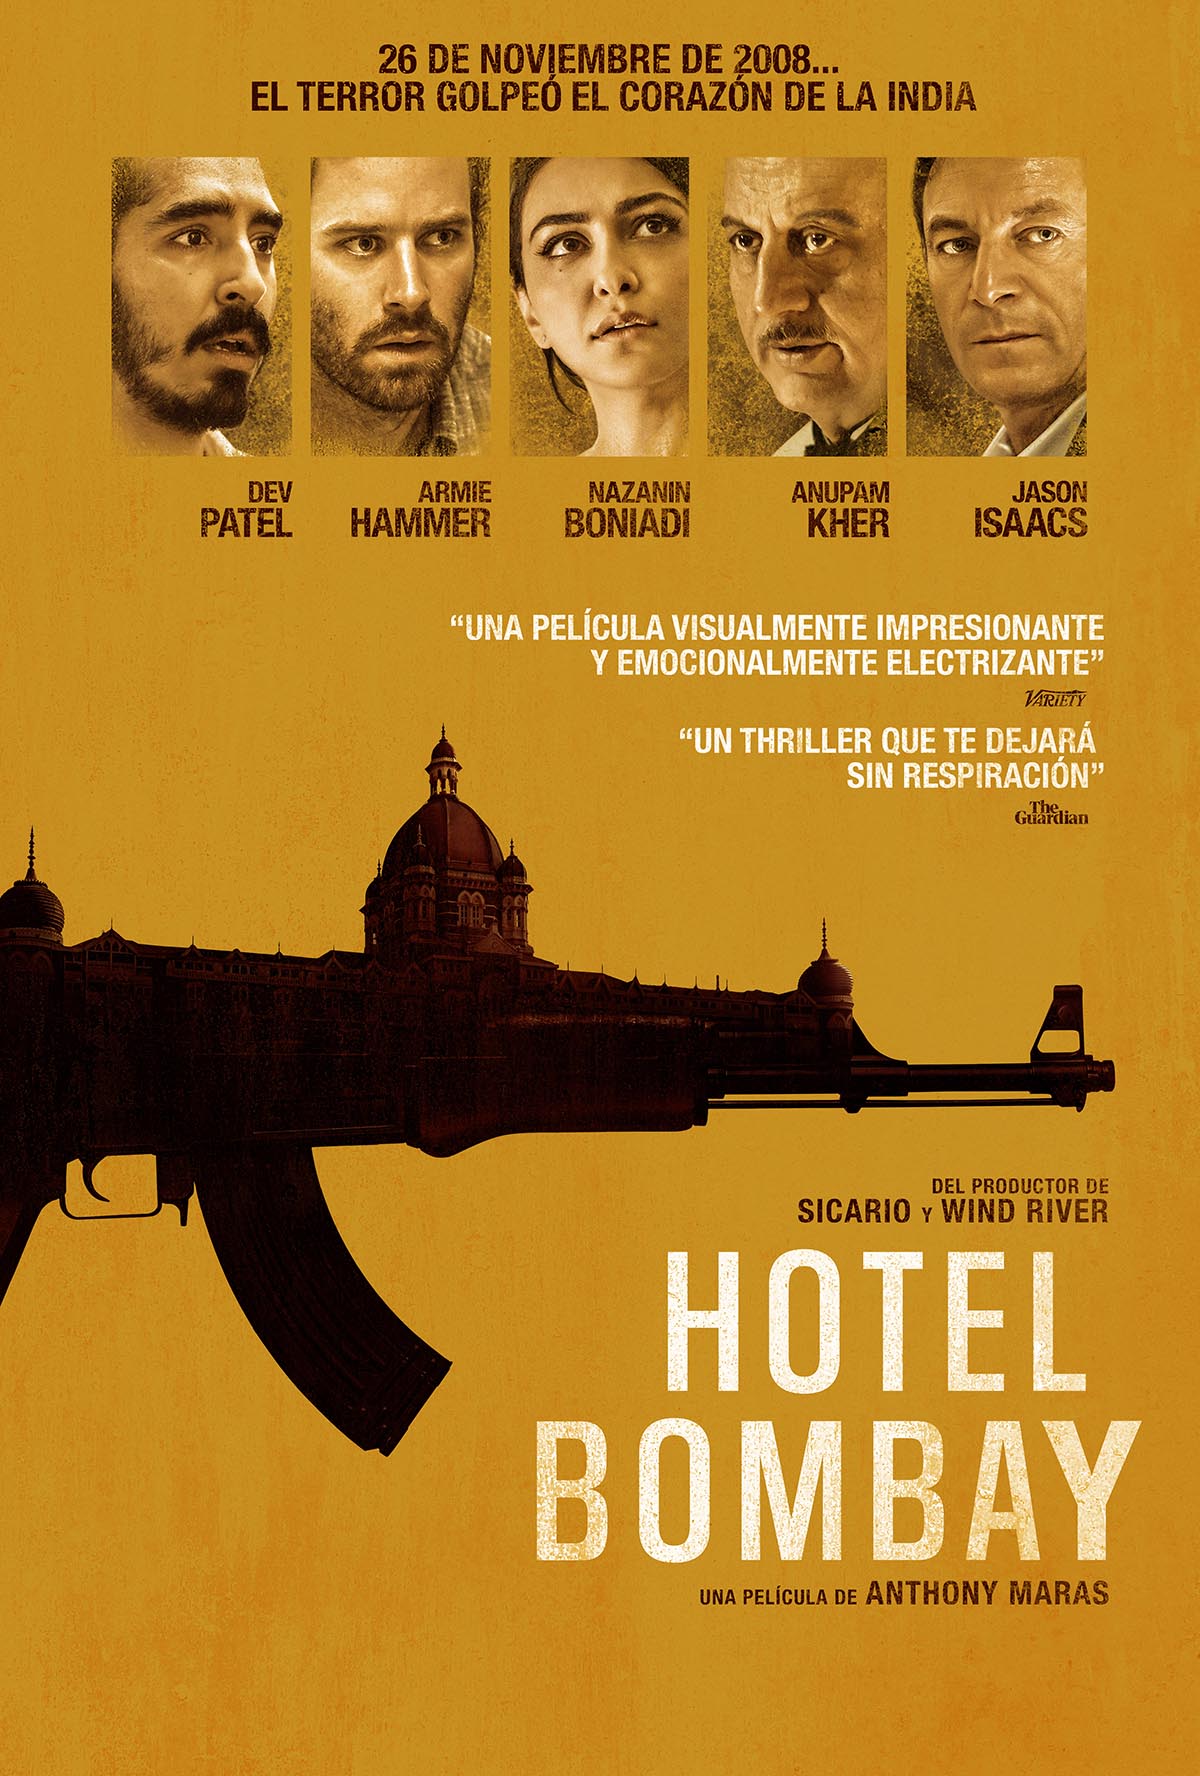 En septiembre veremos ‘Hotel Bombay’